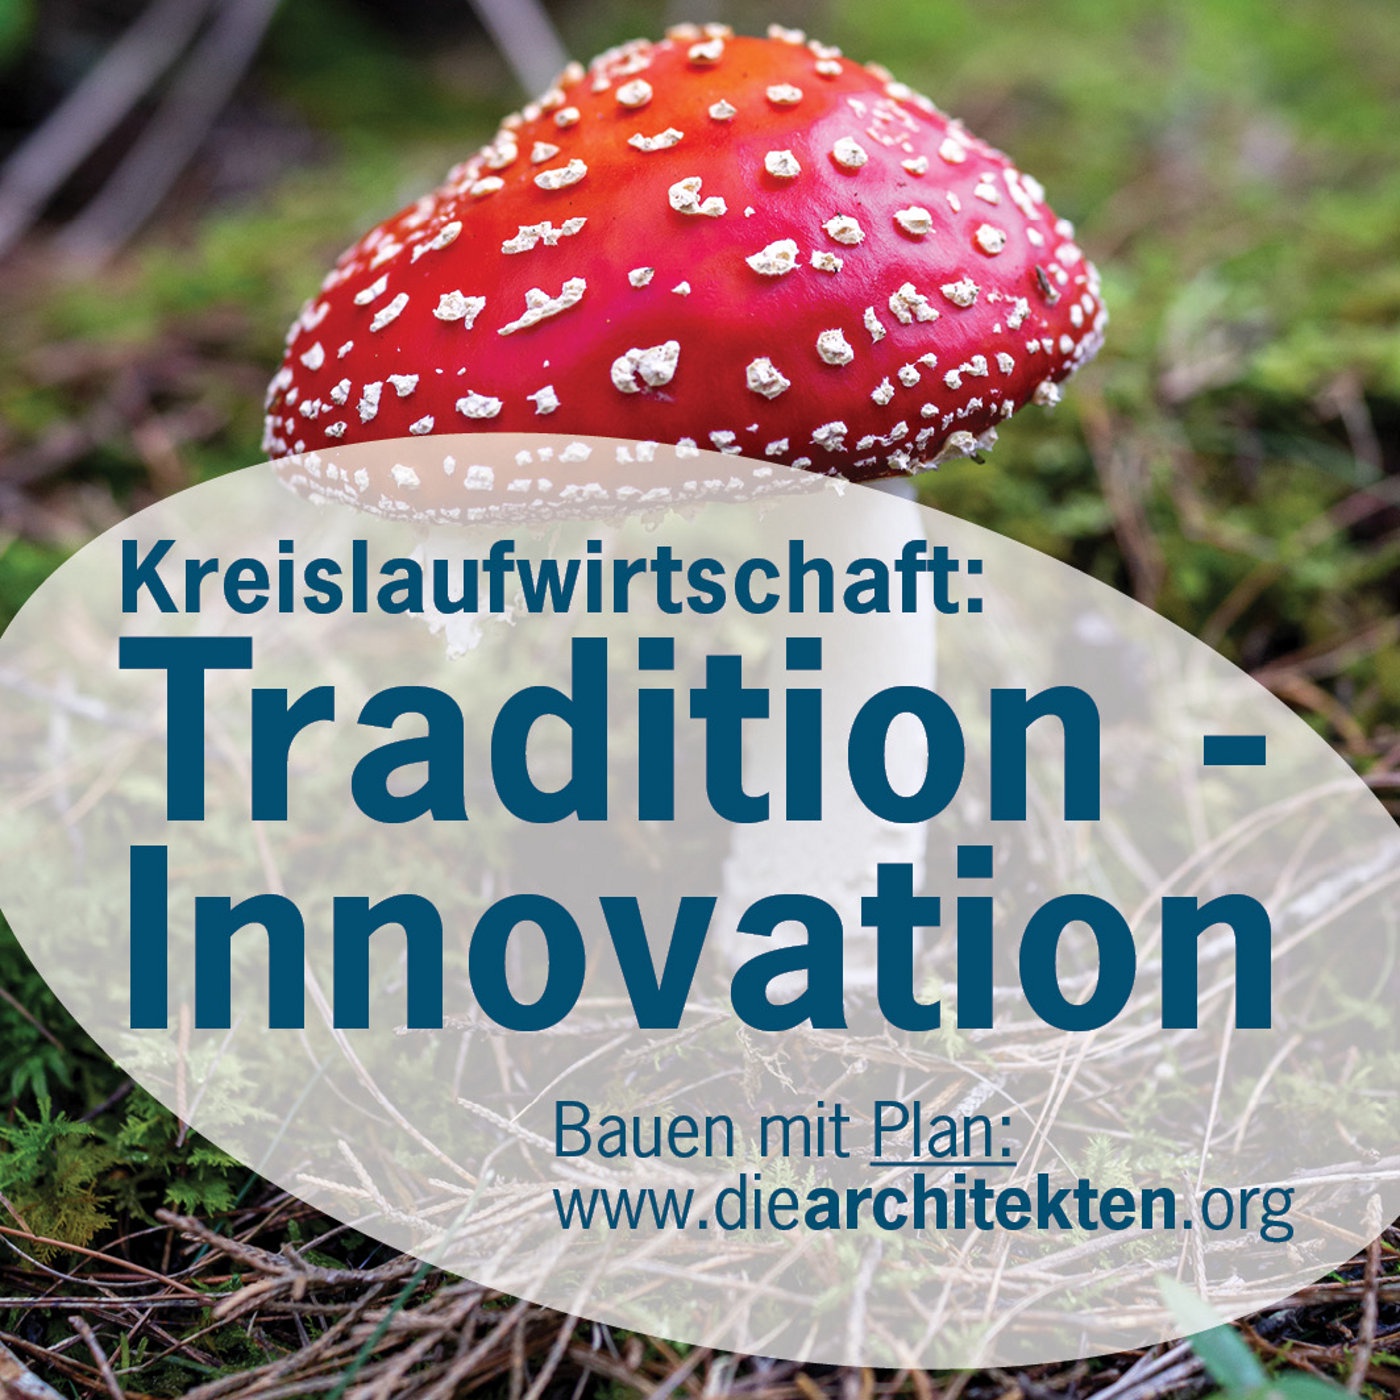 Tradition - Innovation